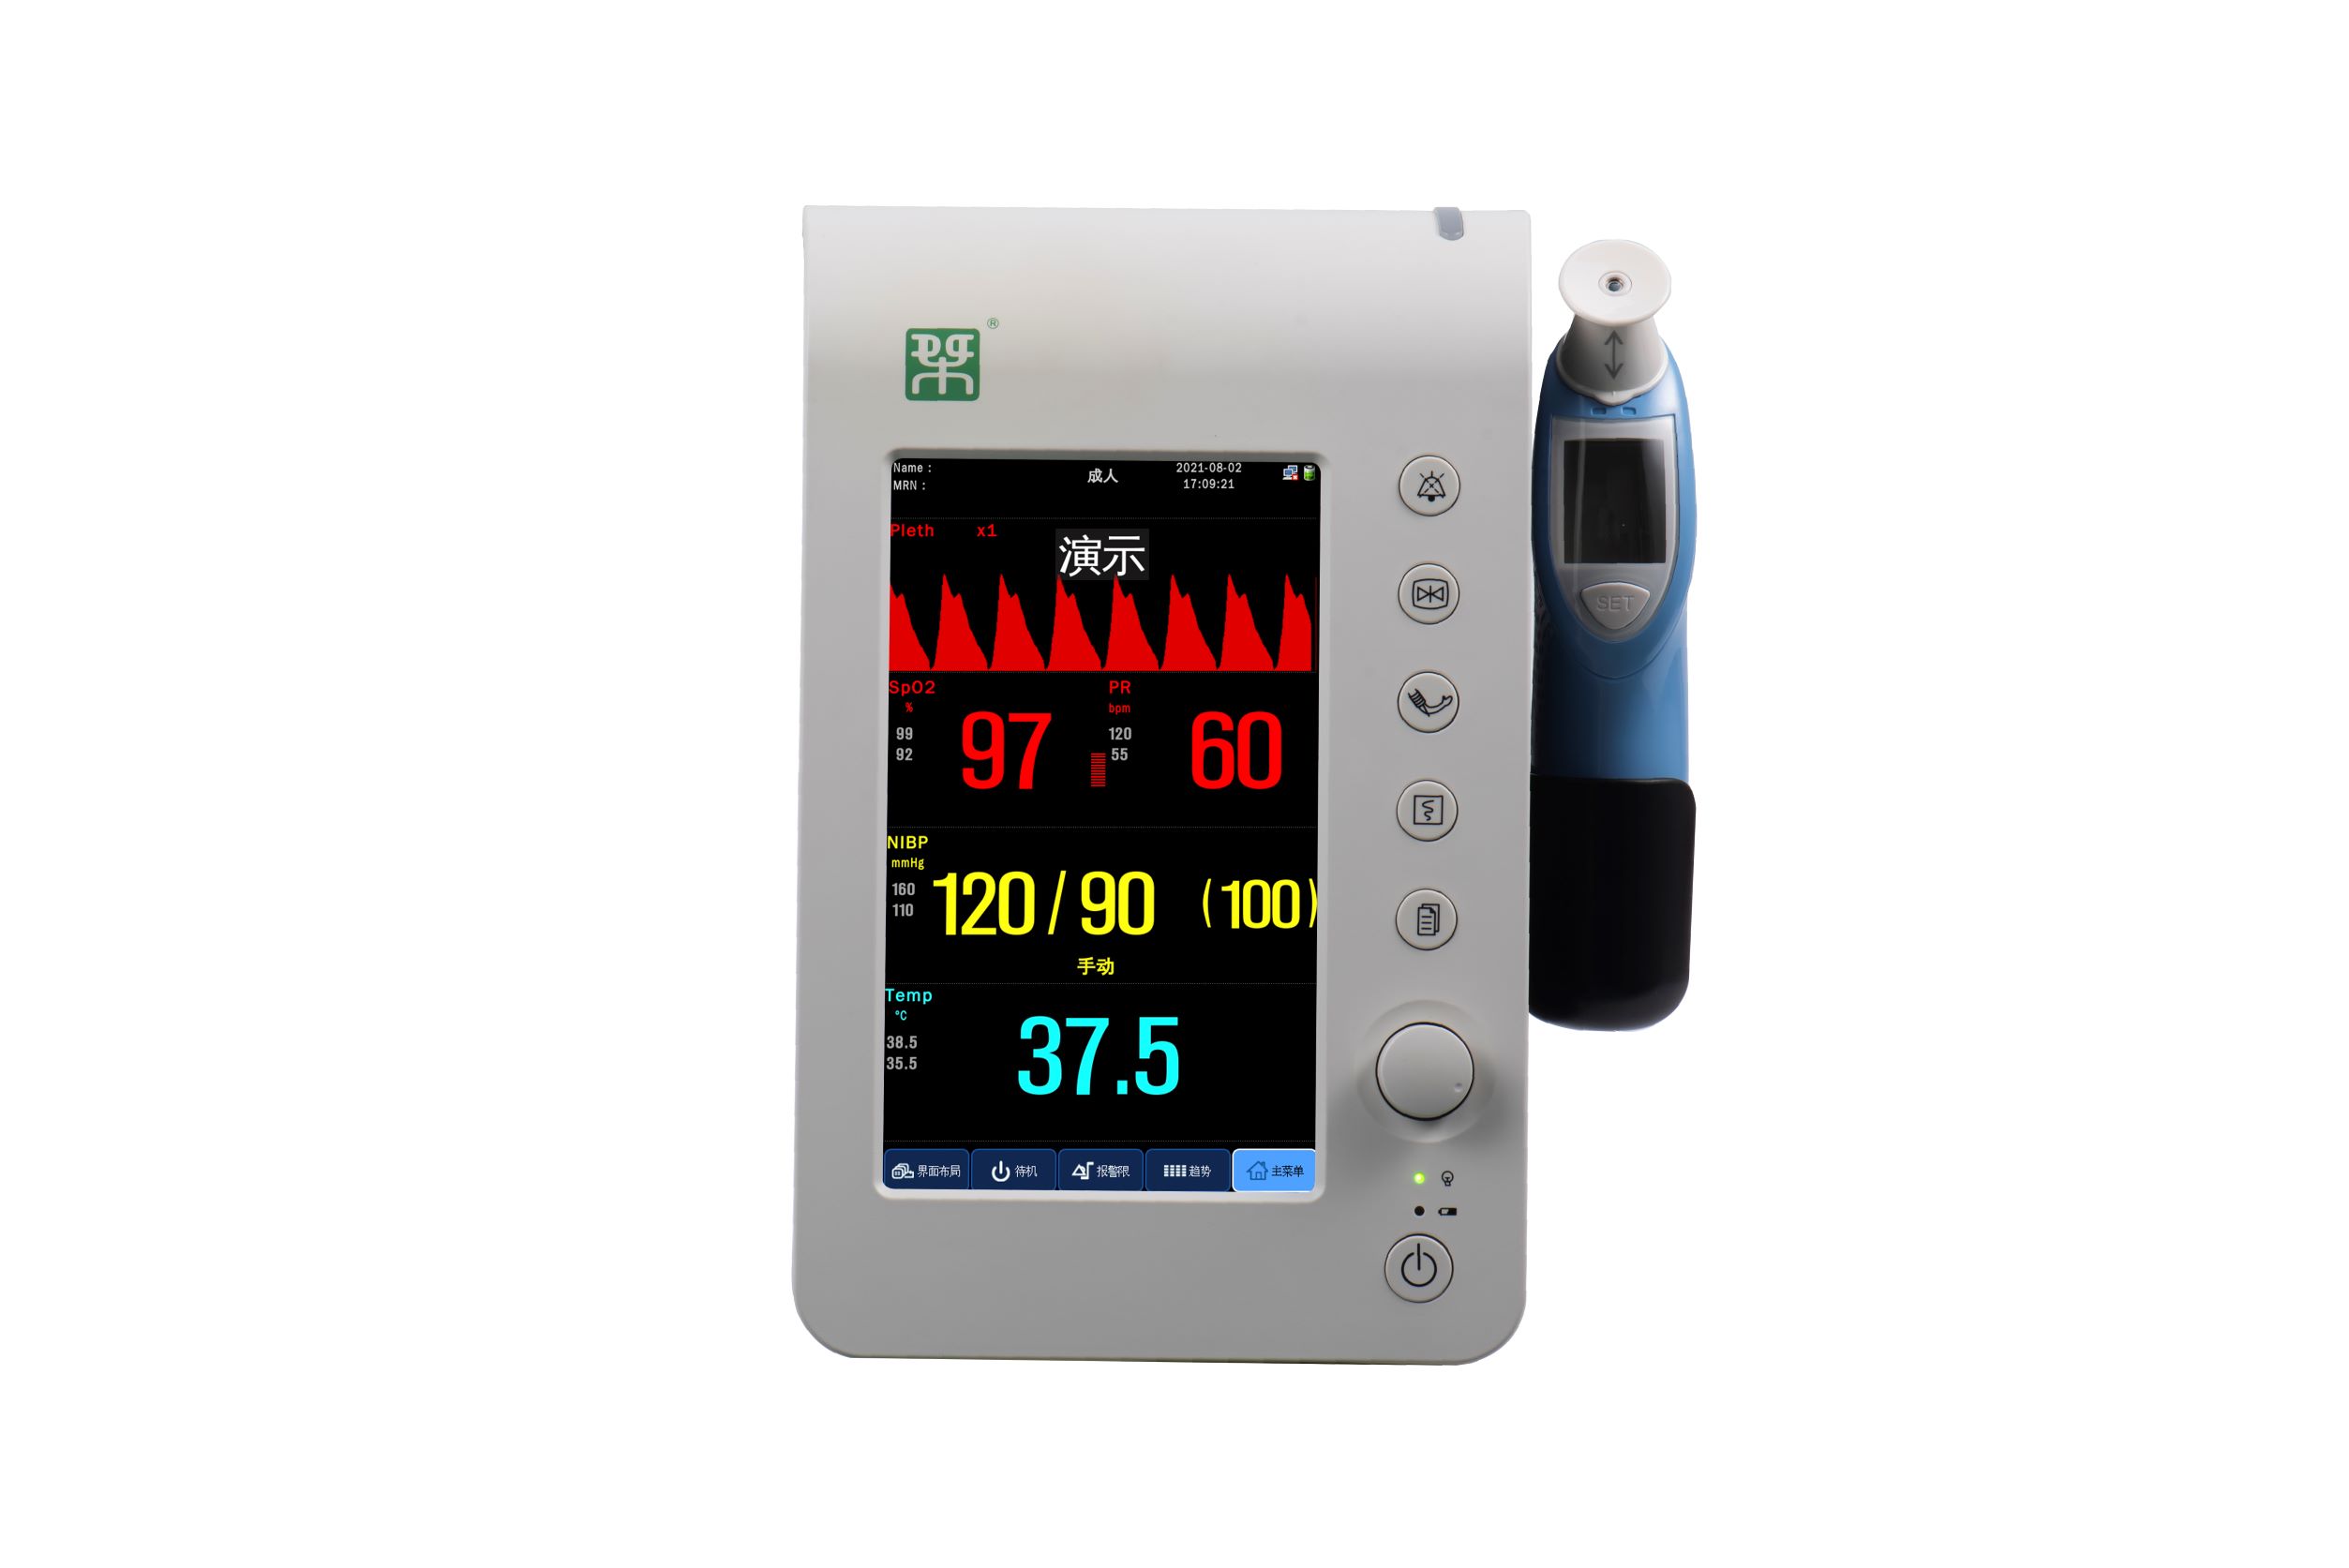 Monitor de constantes vitales G3R